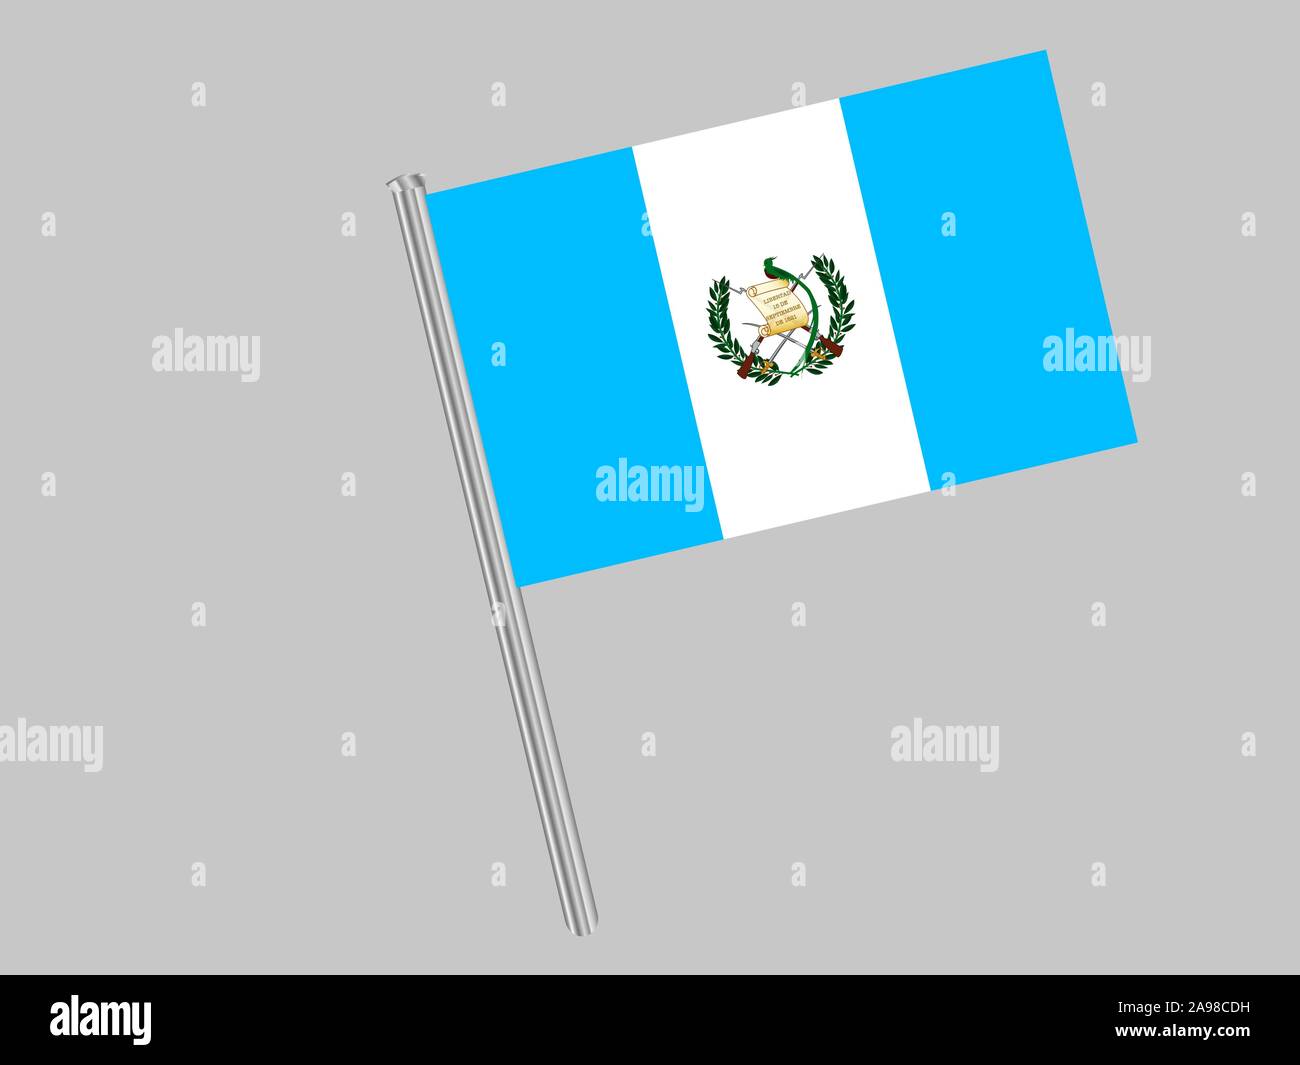 Drapeau national de la République du Guatemala. couleurs d'origine et de proportion. Illustration vectorielle, simplement, en provenance de pays. Illustration de Vecteur